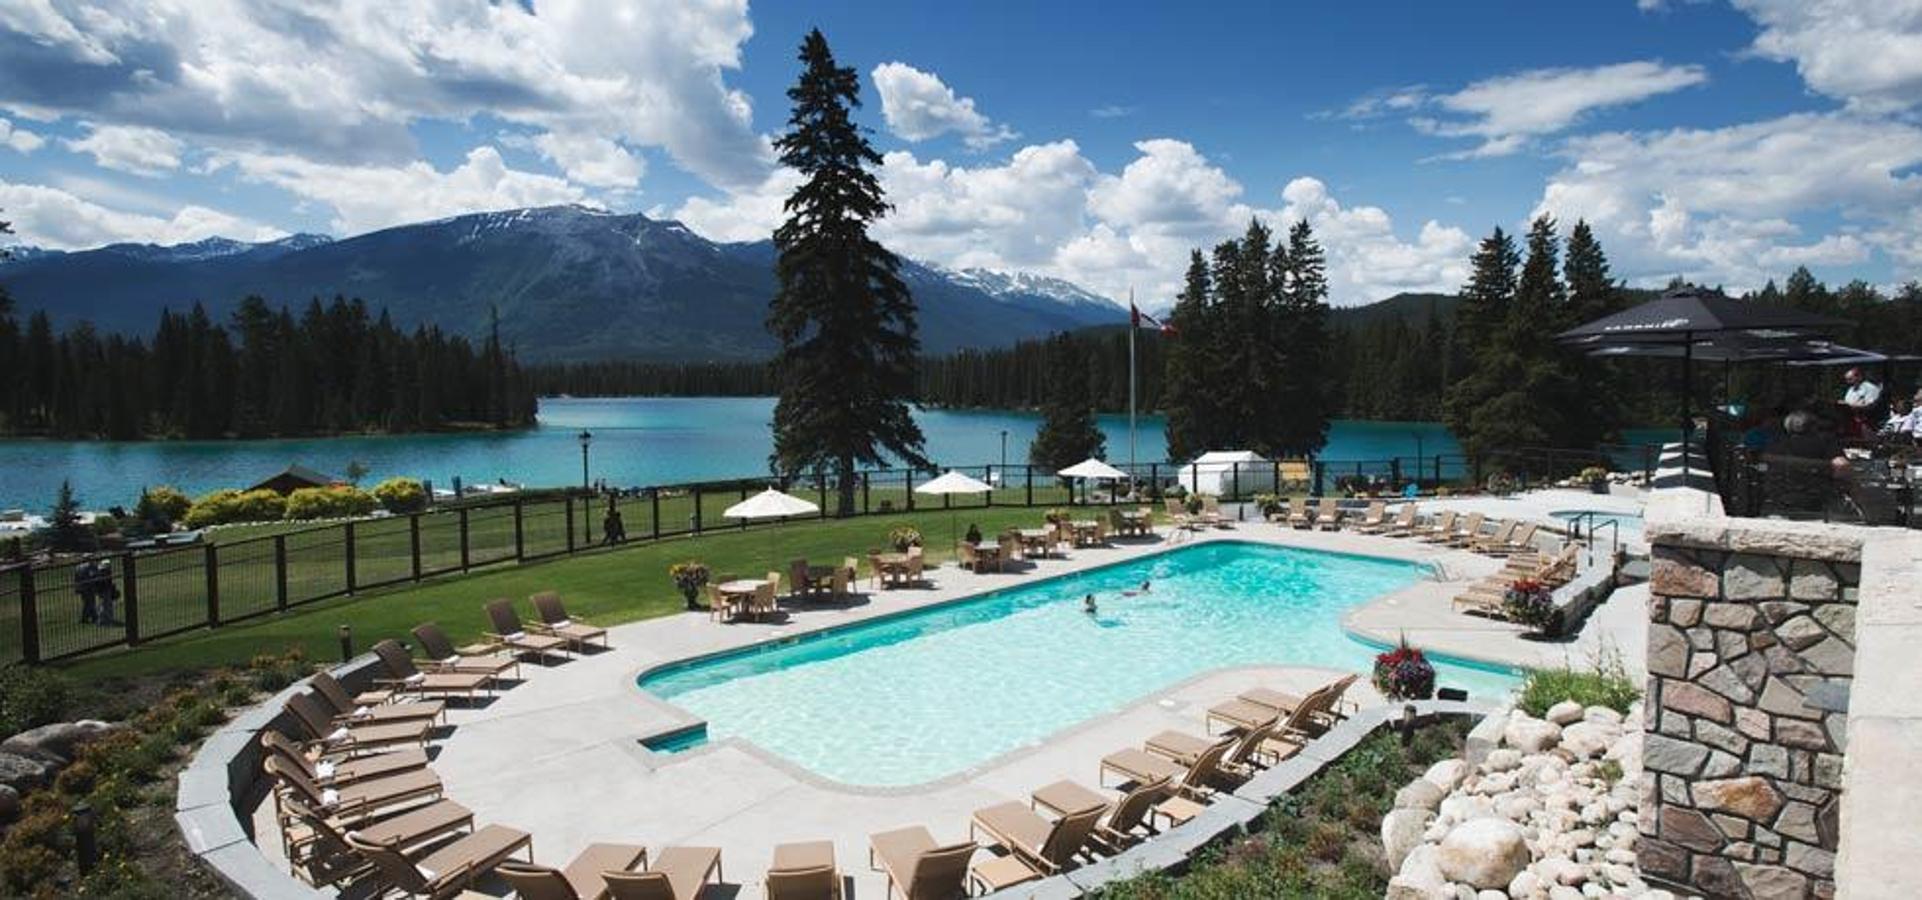 Un resort rodeado de naturaleza. Fairmont Jasper Park Lodge es un resort de montaña